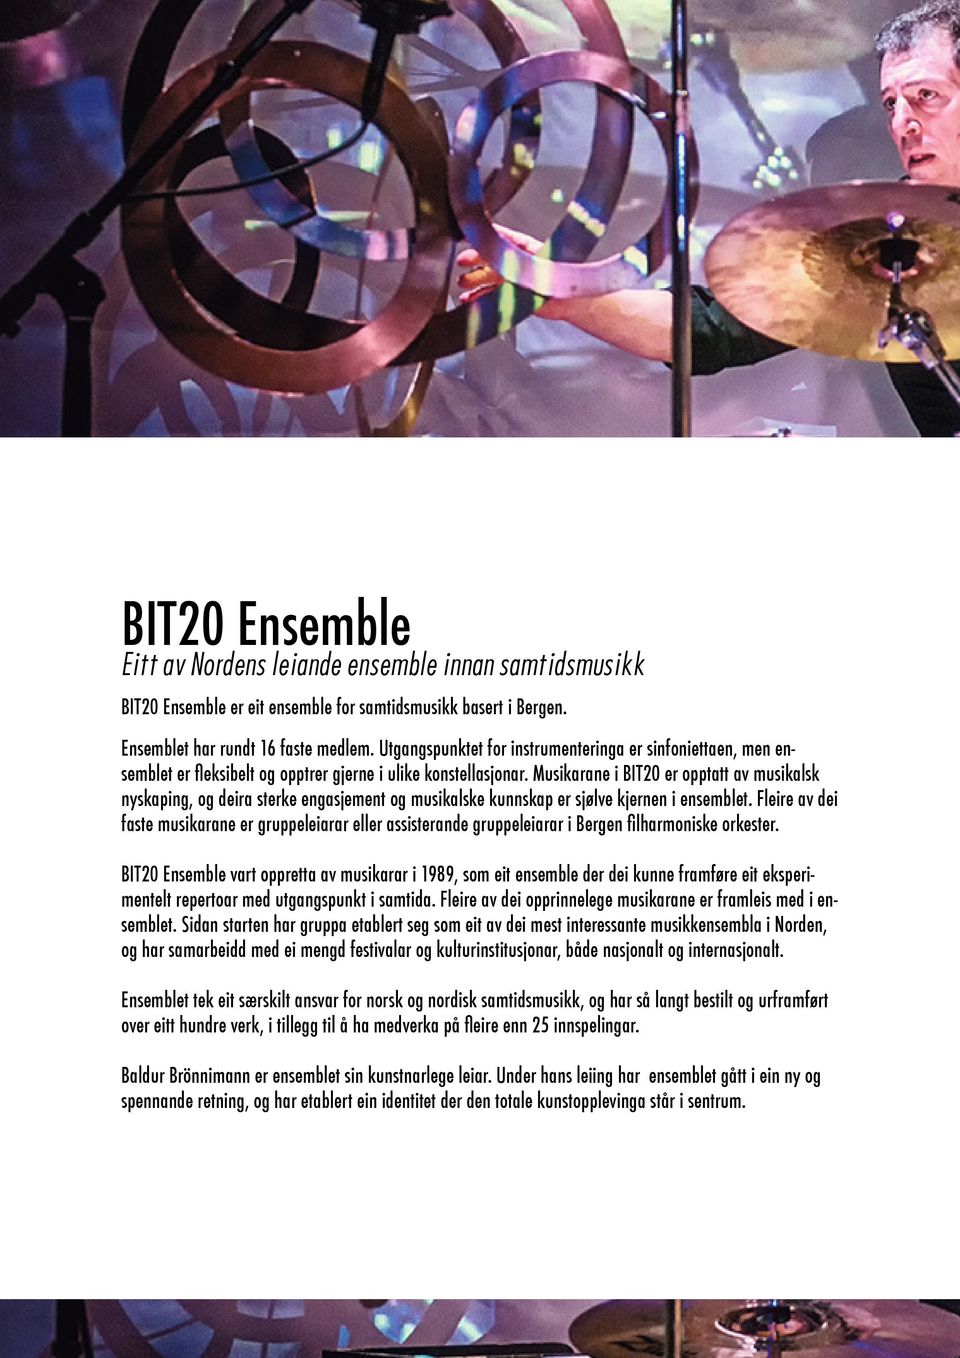 Musikarane i BIT20 er opptatt av musikalsk nyskaping, og deira sterke engasjement og musikalske kunnskap er sjølve kjernen i ensemblet.